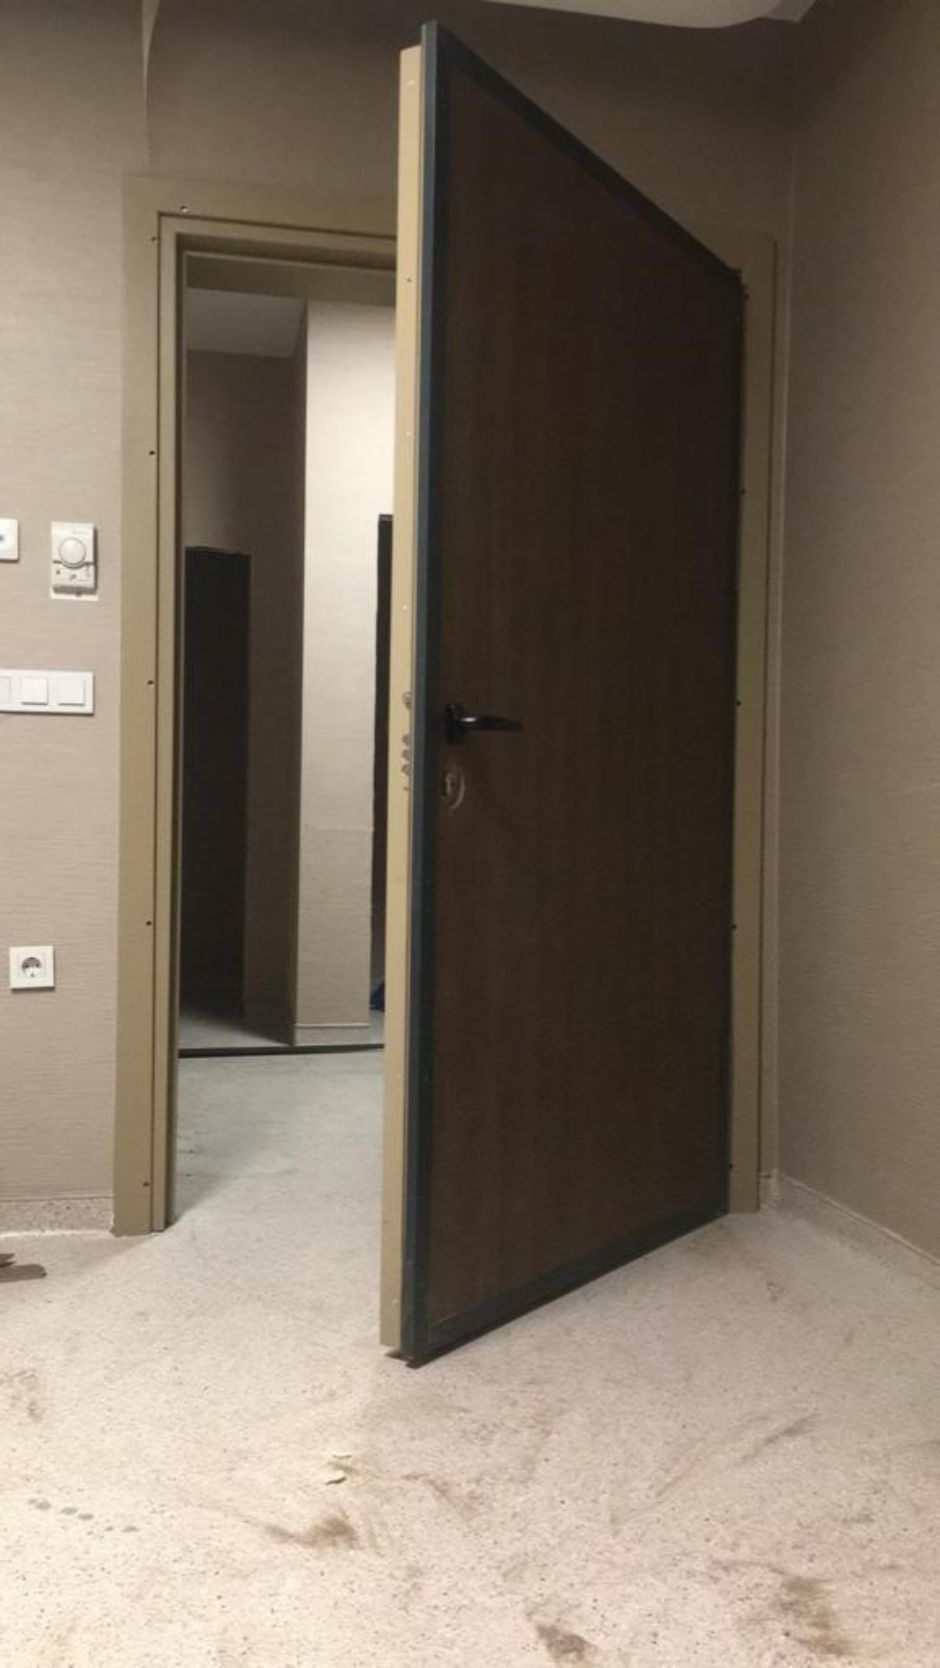 x-ray kapısı